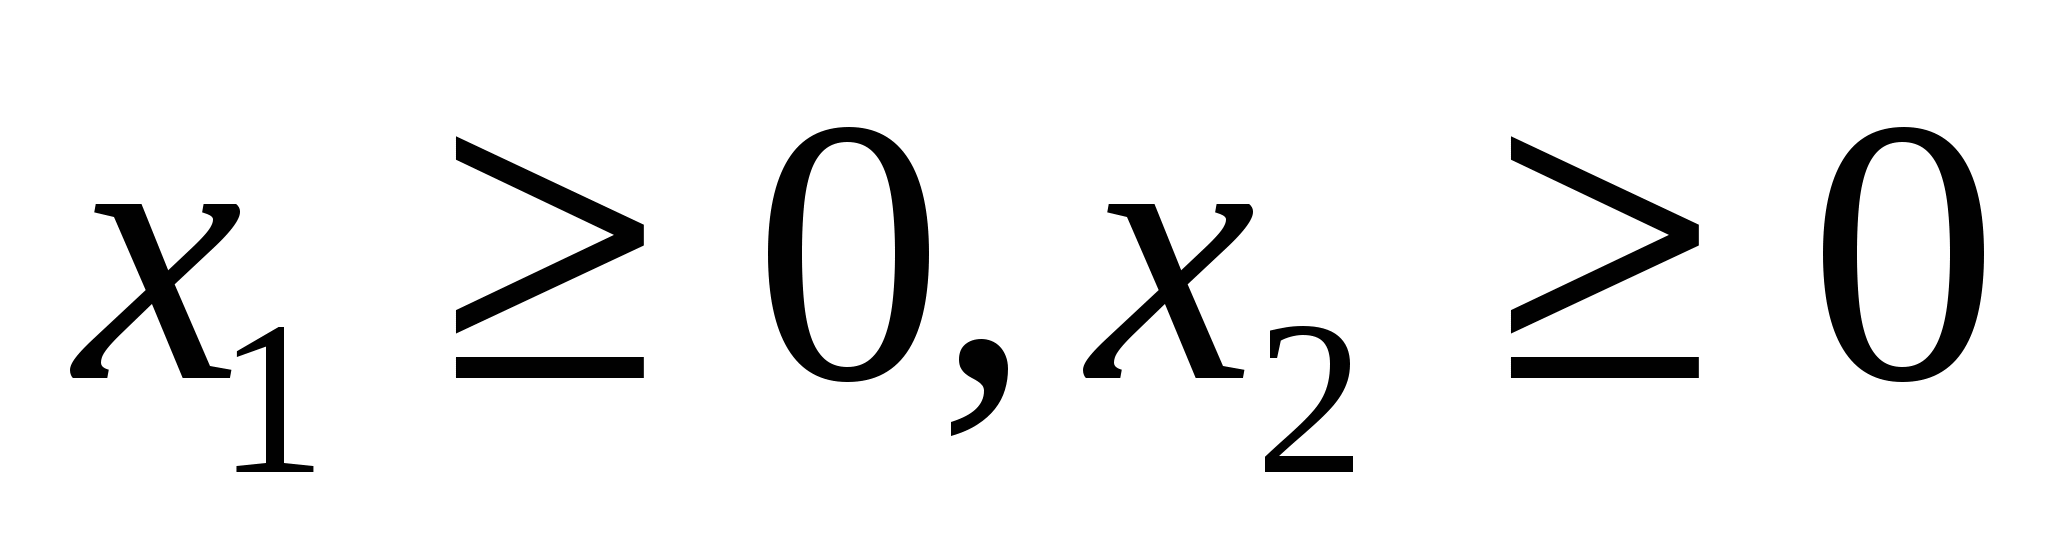 Вектор x 3 1 5. Формы математика. Х вектор. Вектор х-120.